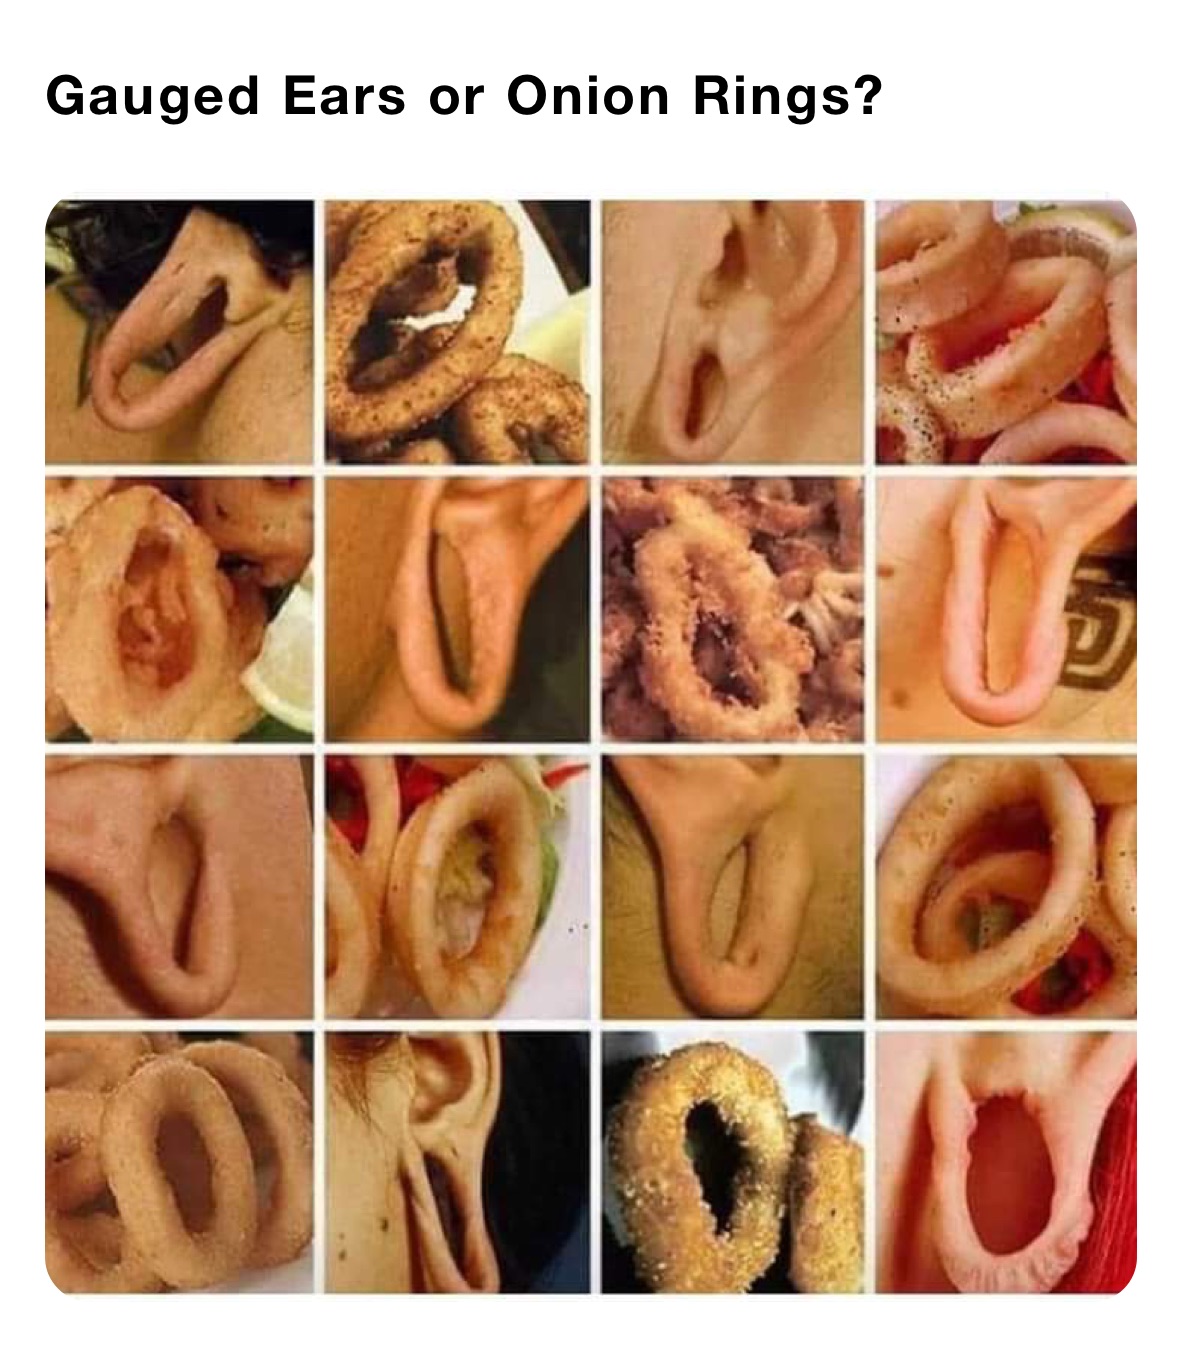 Gauged Ears or Onion Rings?